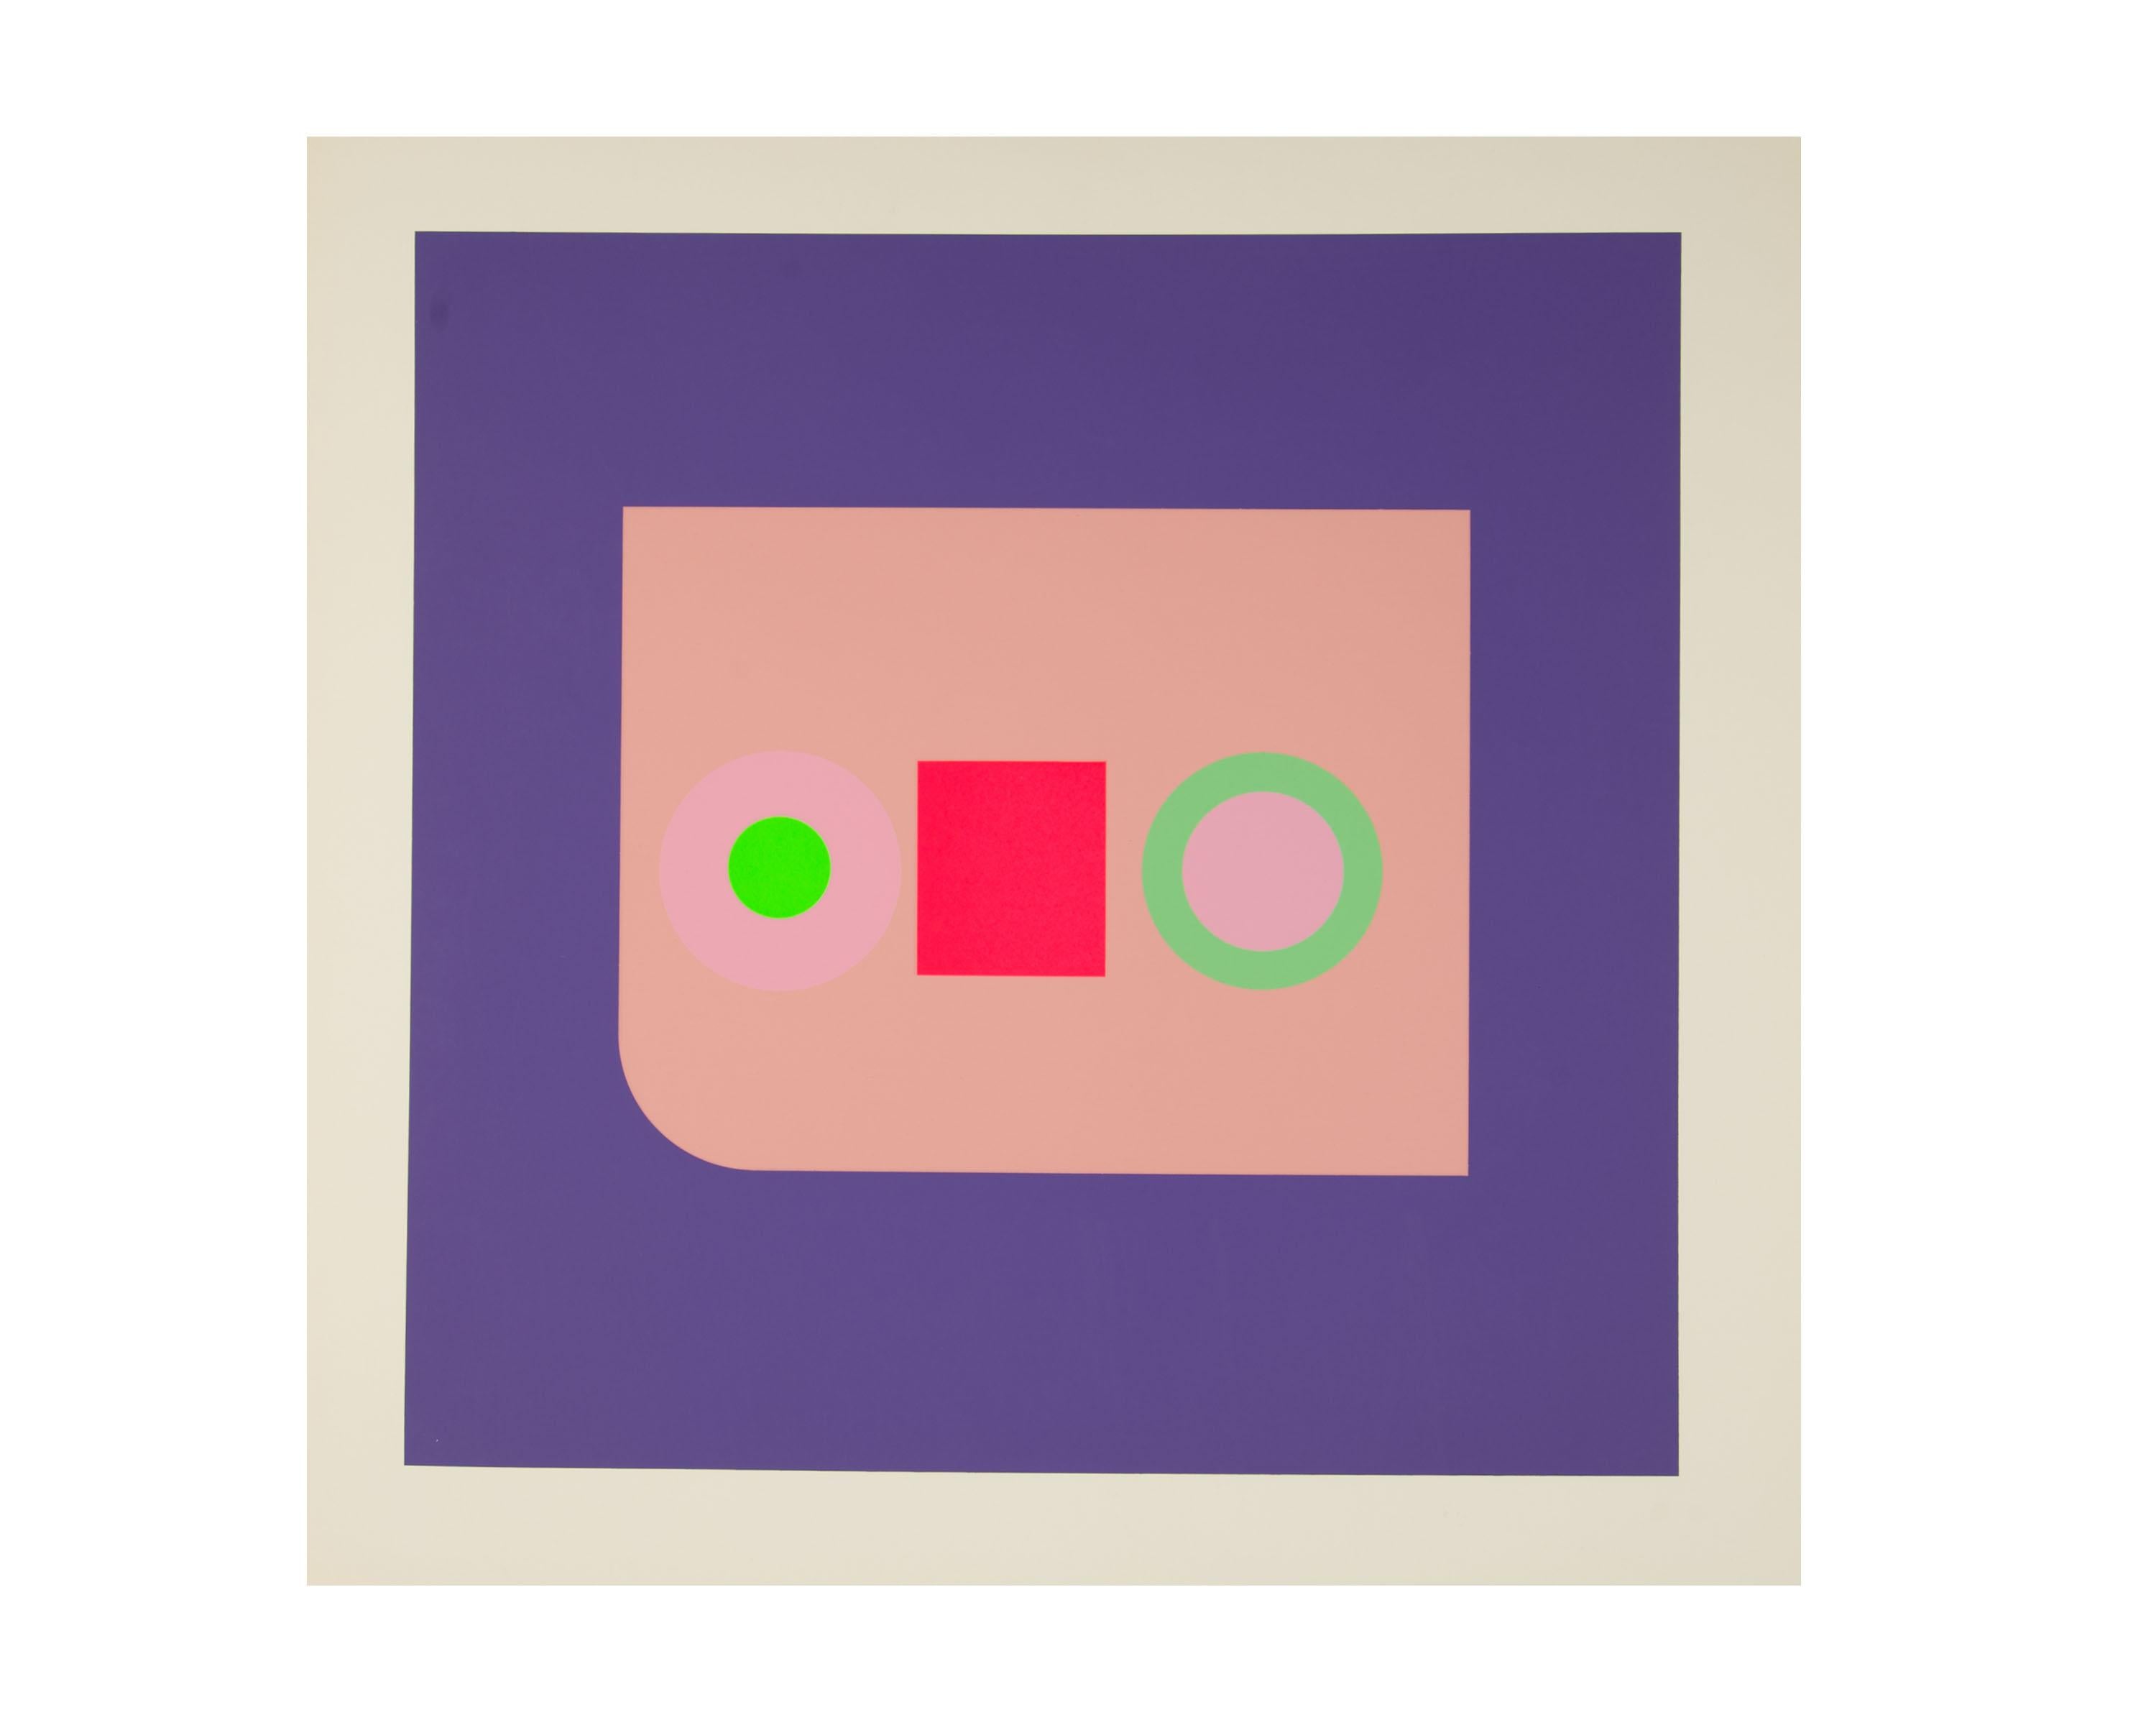 Une sérigraphie Op Art sur papier intitulée Harvard Target #4 par l'artiste, designer et développeur d'origine britannique Peter Gee (1932-2005). Cette impression est composée de formes mates sur un fond violet profond. Quatre petits cercles et un